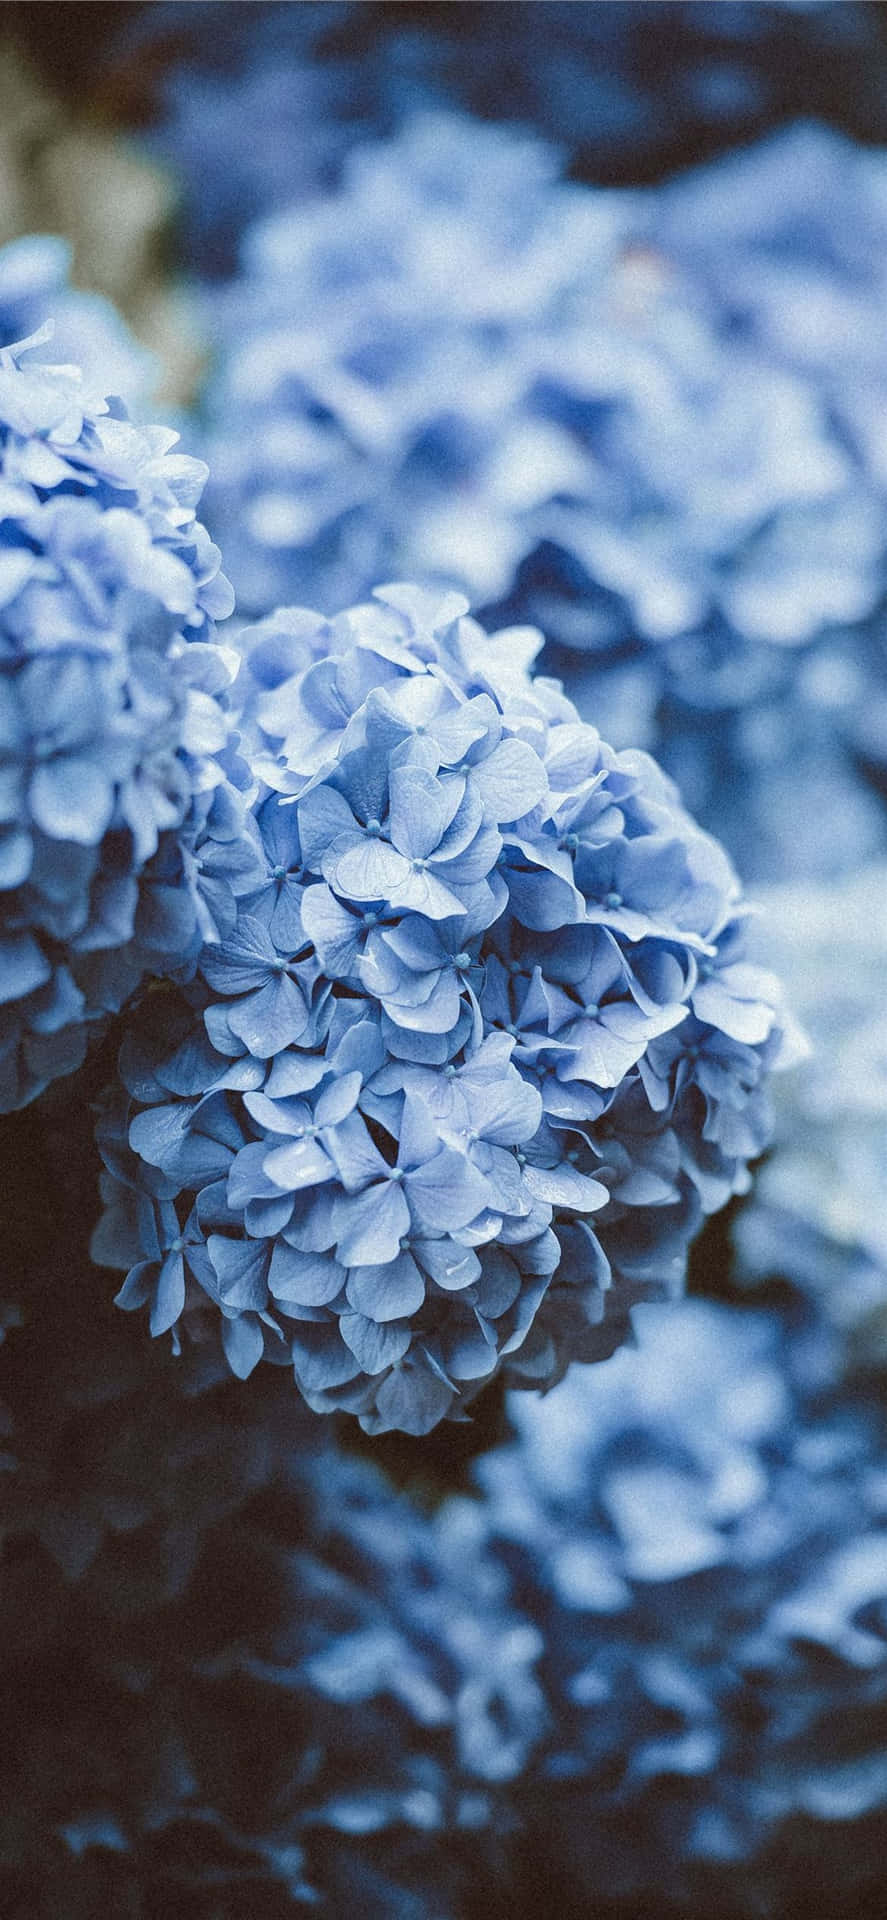 Hortensienästhetisches Bild Mit Blauen Blumen